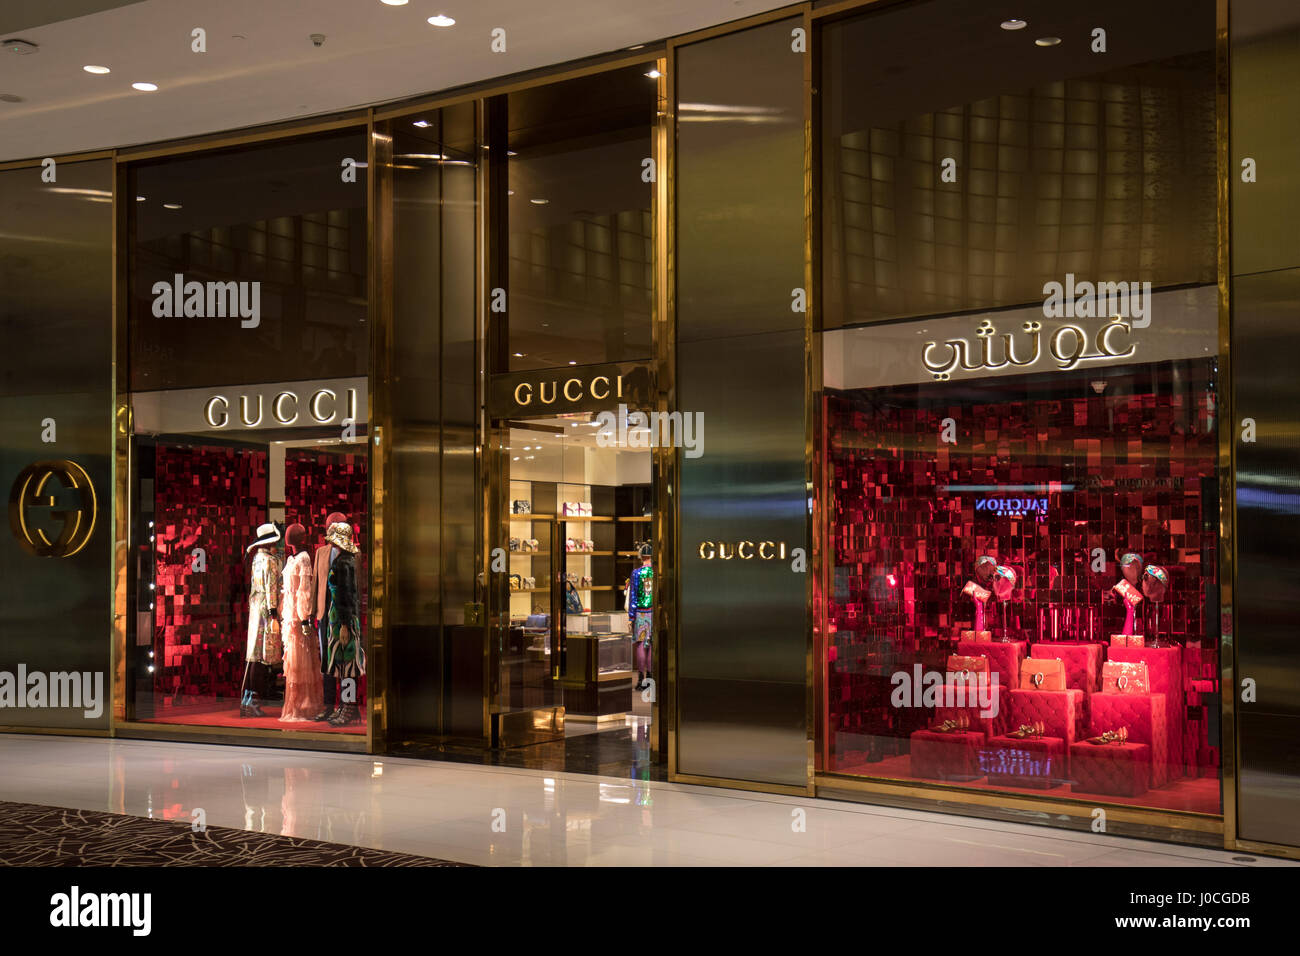 The Gucci shop in Fashion Avenue of the Dubai Mall Stock Photo - Alamy